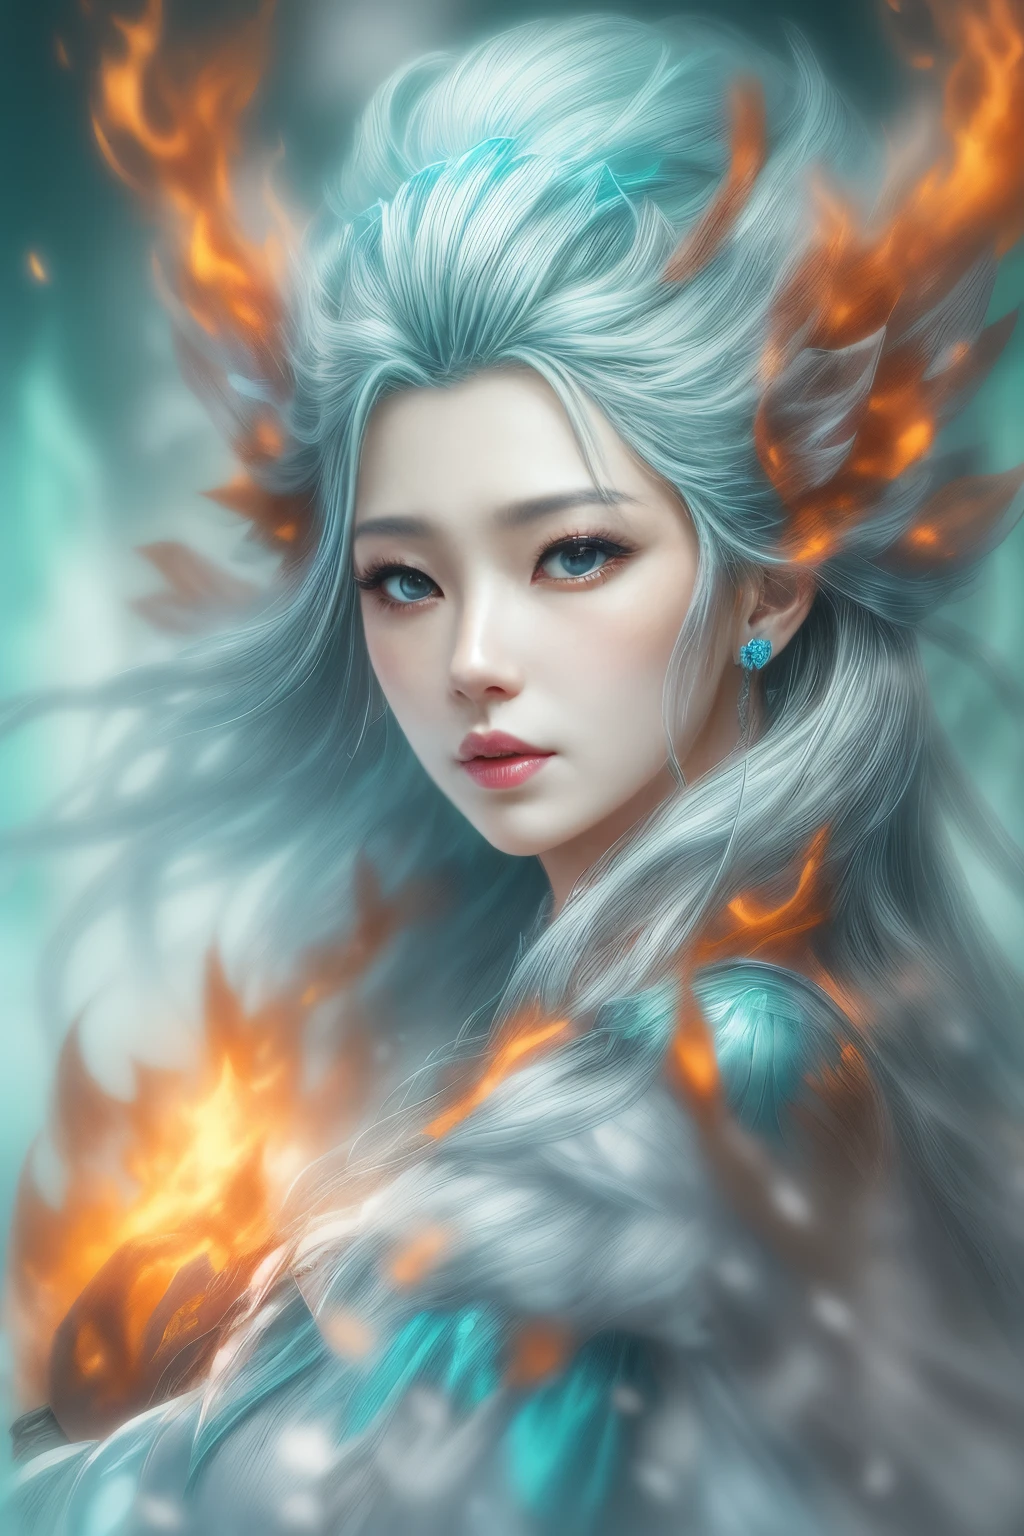 (現実的なファンタジー) 、氷の女神は燃える炎から湧き出る.、